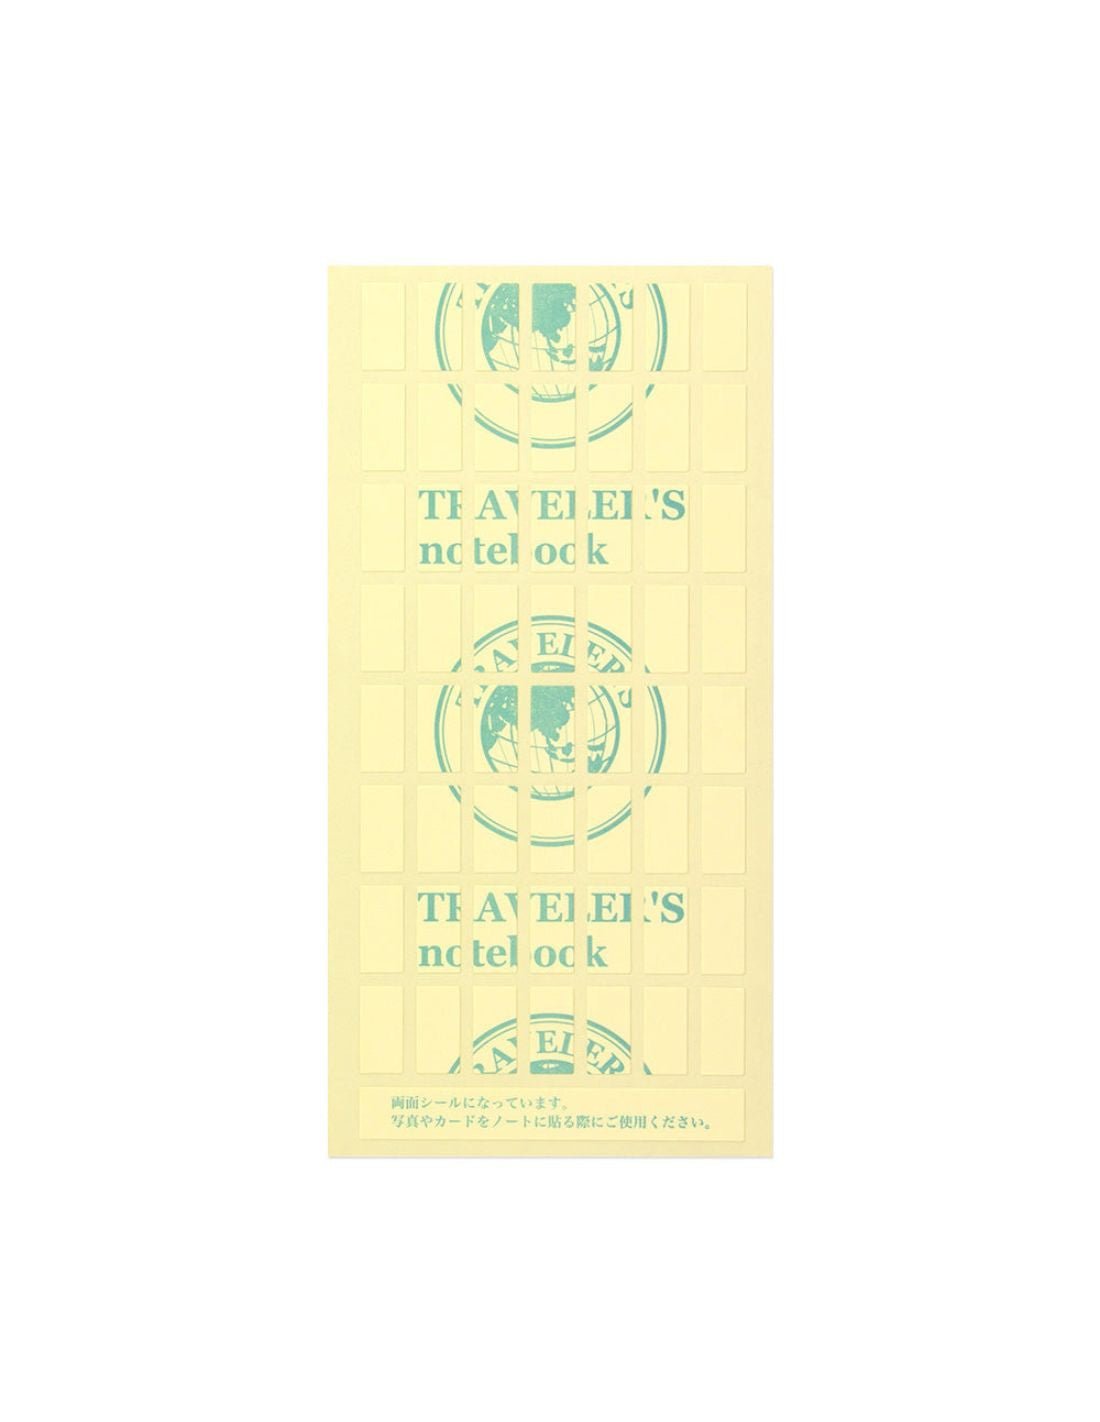 TRAVELER'S notebook 010 - adhésifs double-face (regular size) - TN Regular size - - 4902805143035